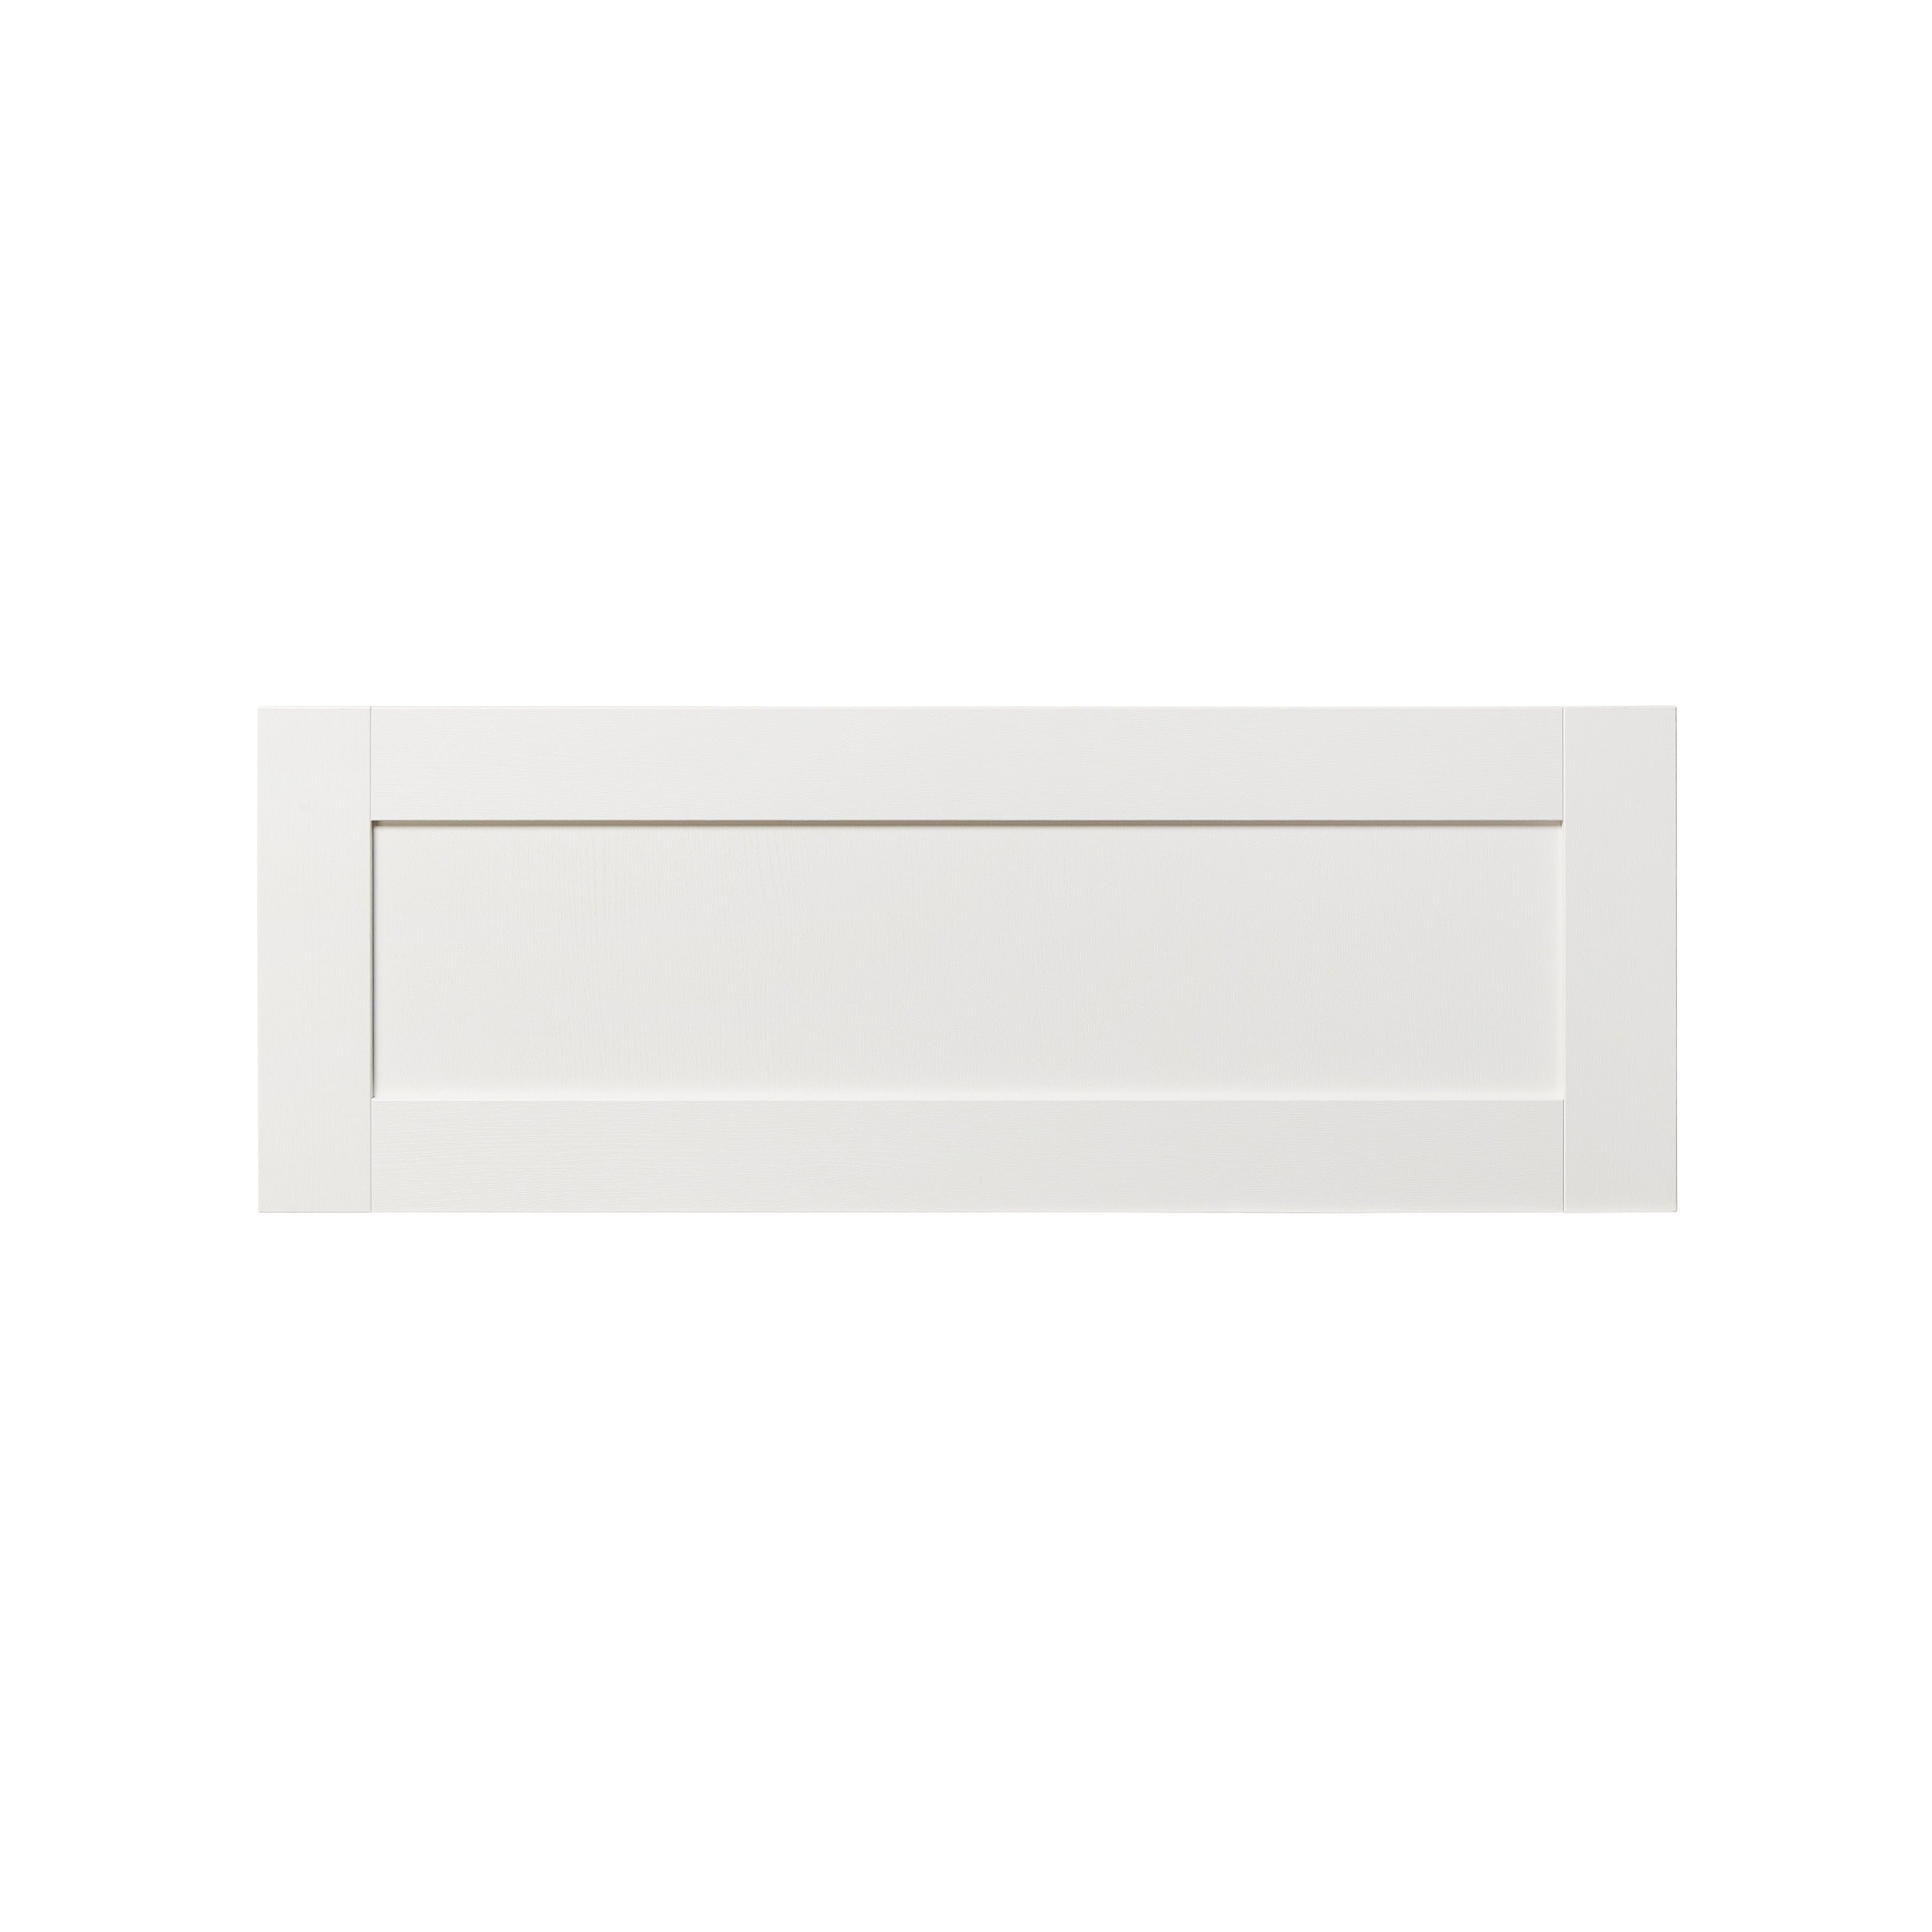 GoodHome Alpinia Matt ivory wood effect Drawer front, bridging door & bi fold door, (W)1000mm (H)356mm (T)18mm